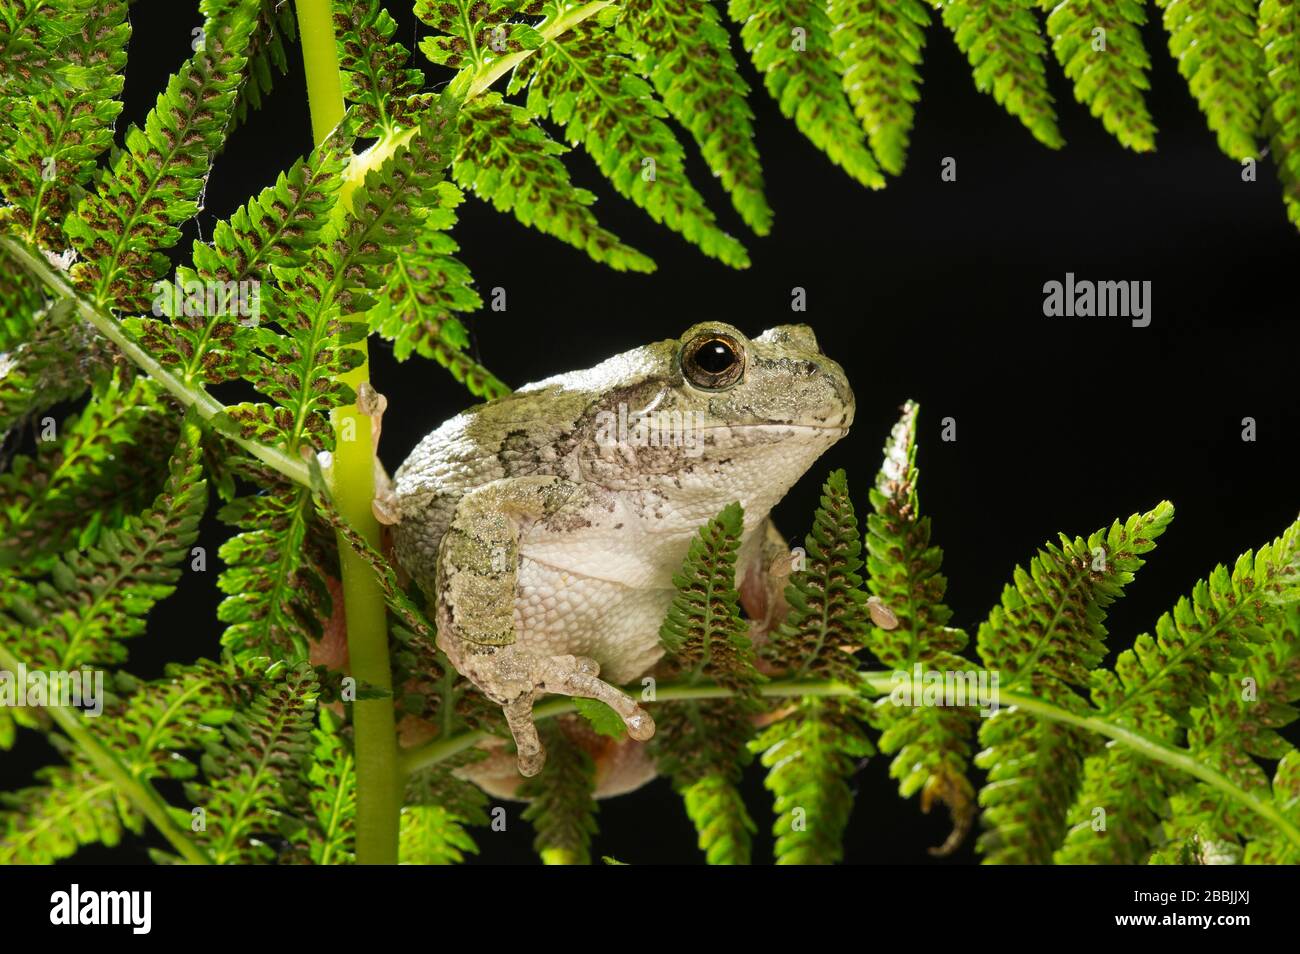 Frog grigio (Ayla versicolor) riposante su fern frond, e USA, di Dominique Braud/Dembinsky Photo Assoc Foto Stock